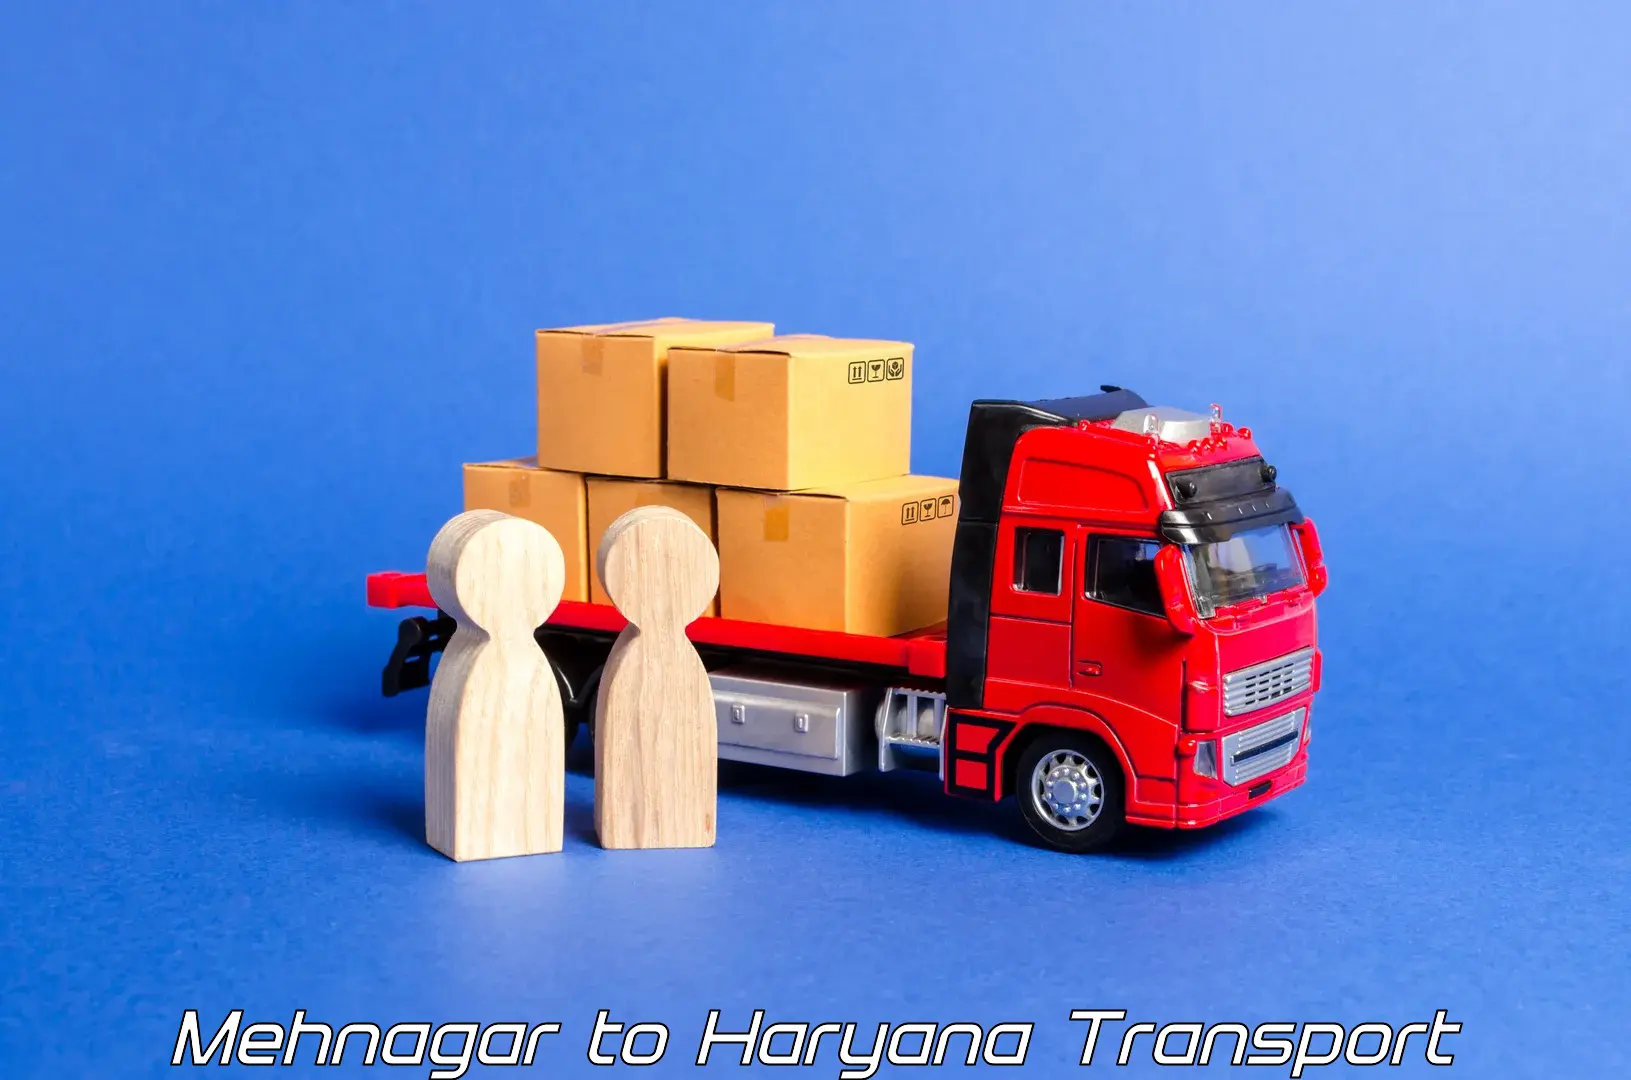 Transportation solution services Mehnagar to Gurgaon